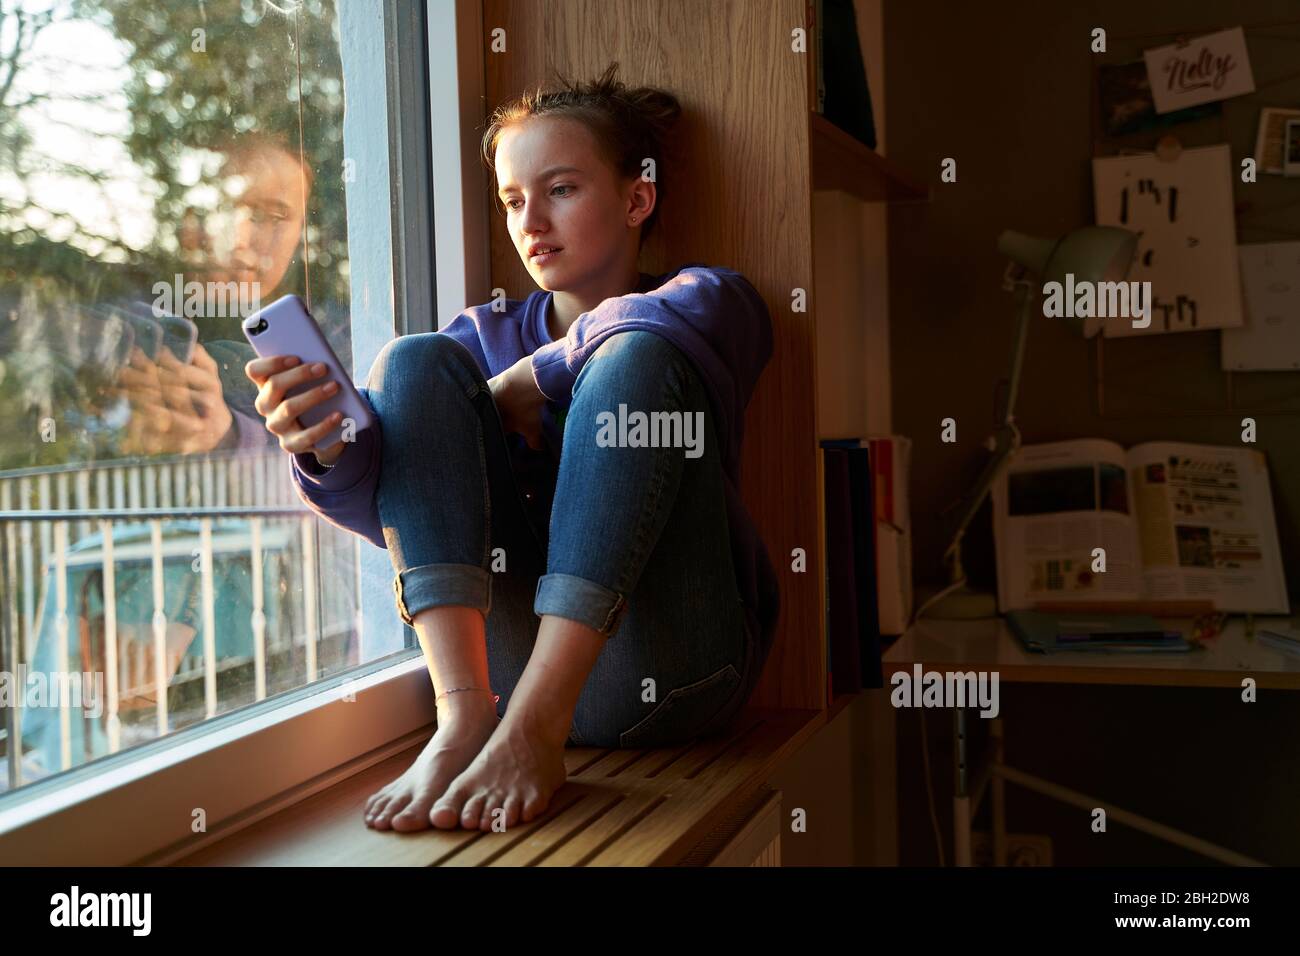 Chica sentada descalza en el alféizar de la ventana por la noche mirando el smartphone Foto de stock